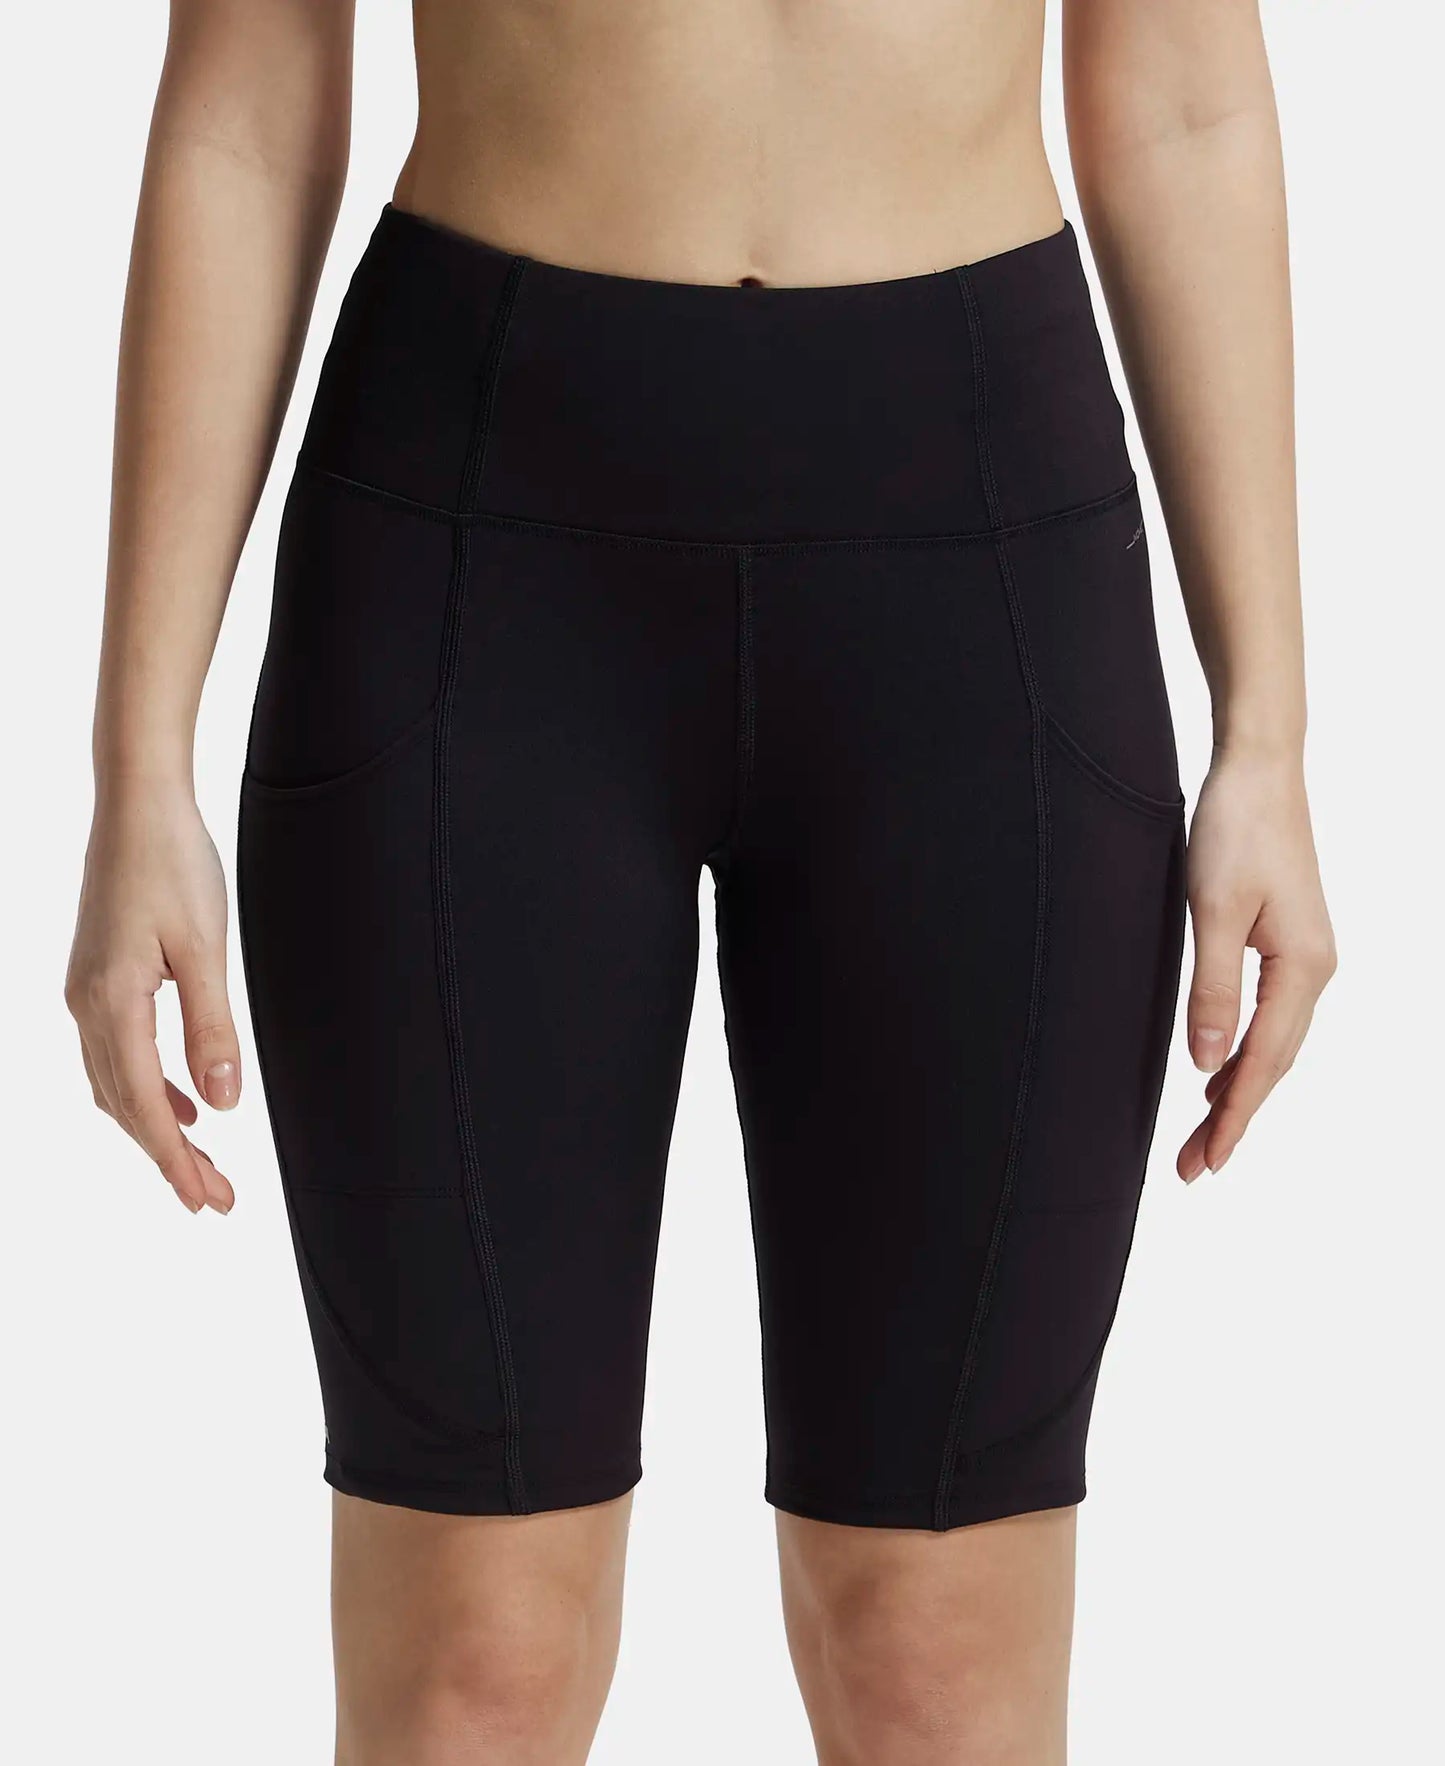 Microfiber Elastane Slim Fit Shorts with Side Pockets - Black-1